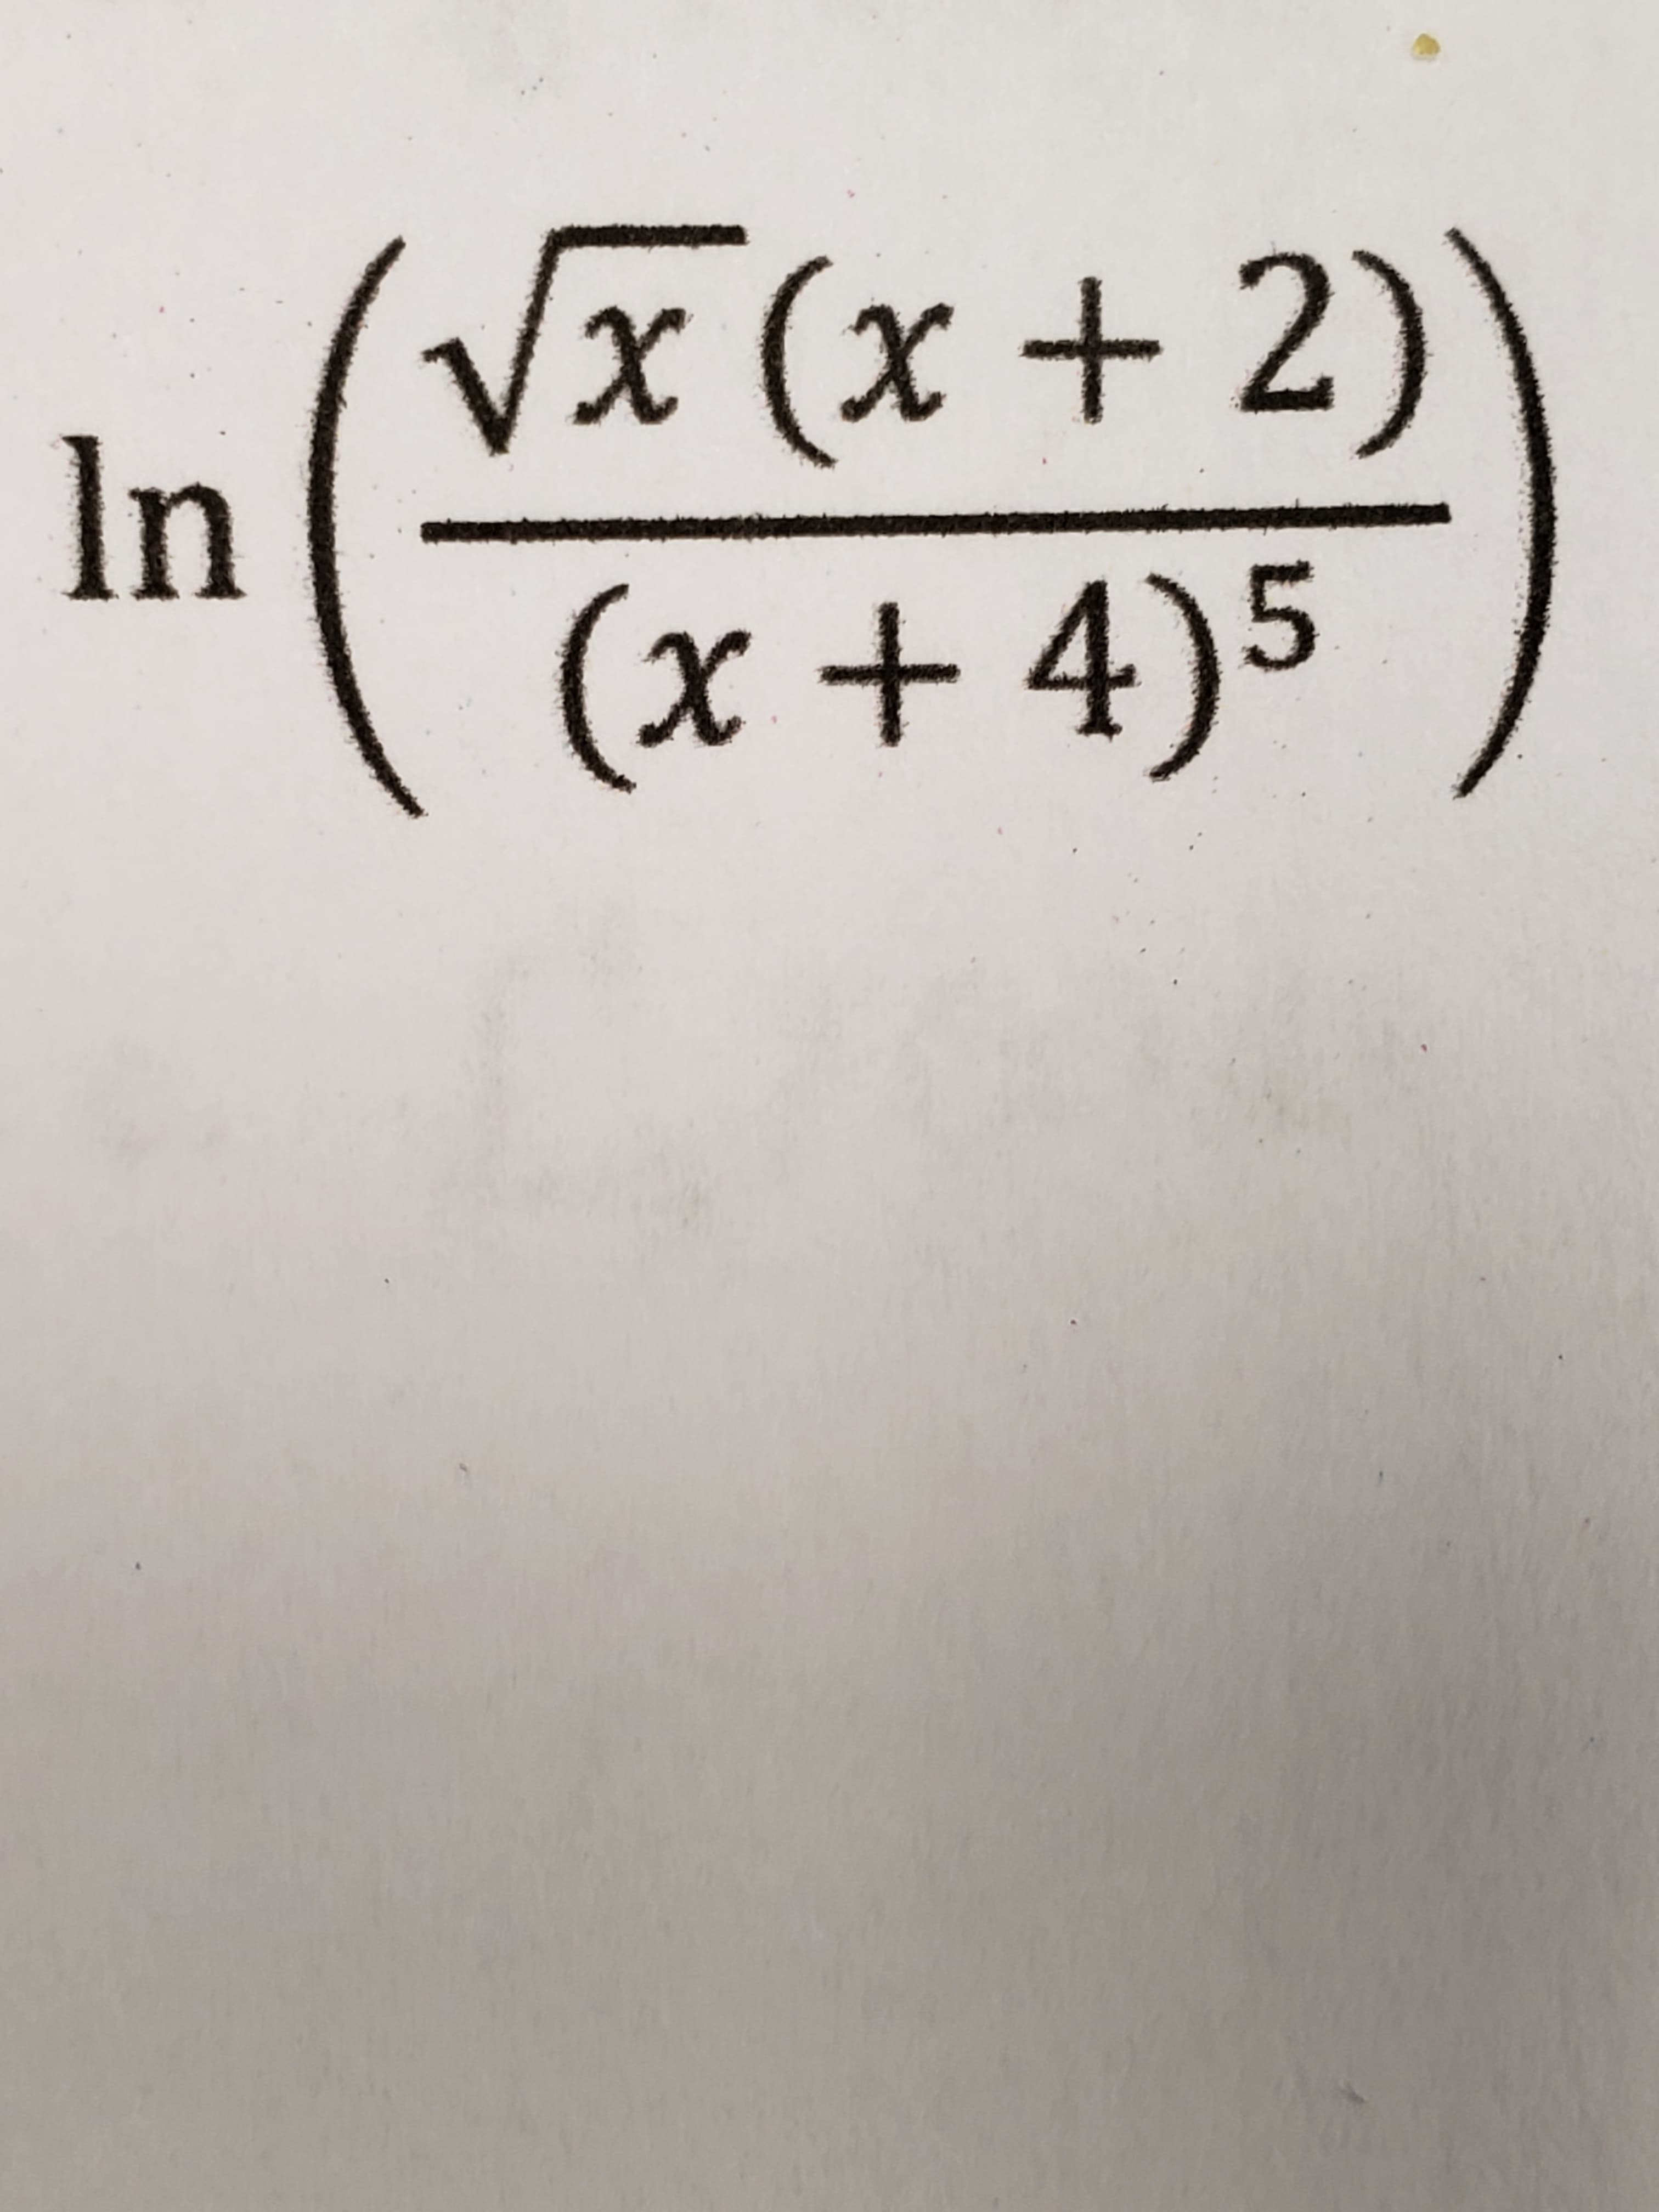 Vx (x + 2)'
In
(x + 4)5
